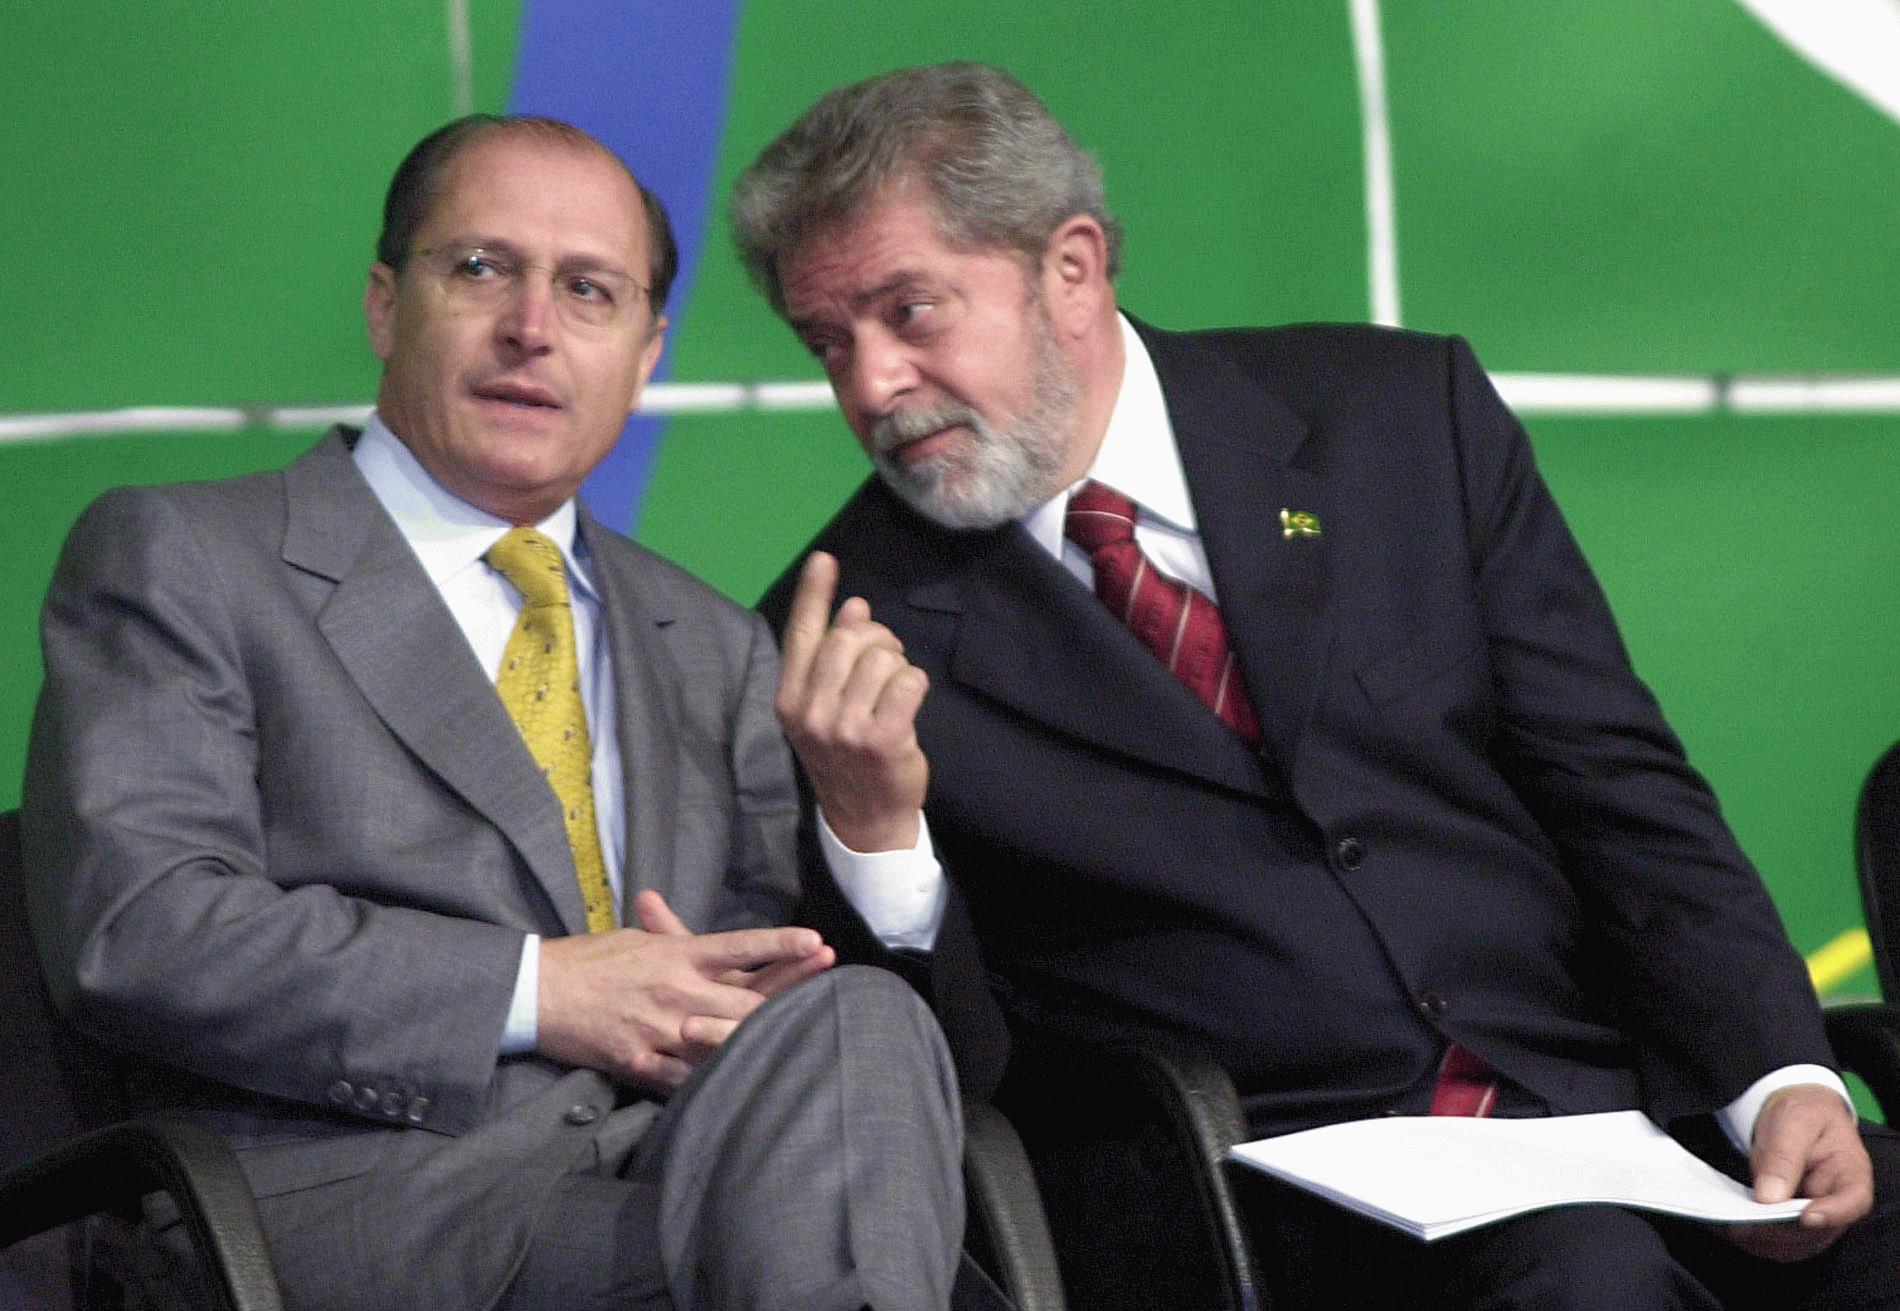 O então presidente Luiz Inácio Lula da Silva conversa com o então governador de São Paulo, Geraldo Alckmin, durante a cerimônia da ampliação da unidade de papel e celulose do Grupo Votorantin, em agosto de 2003